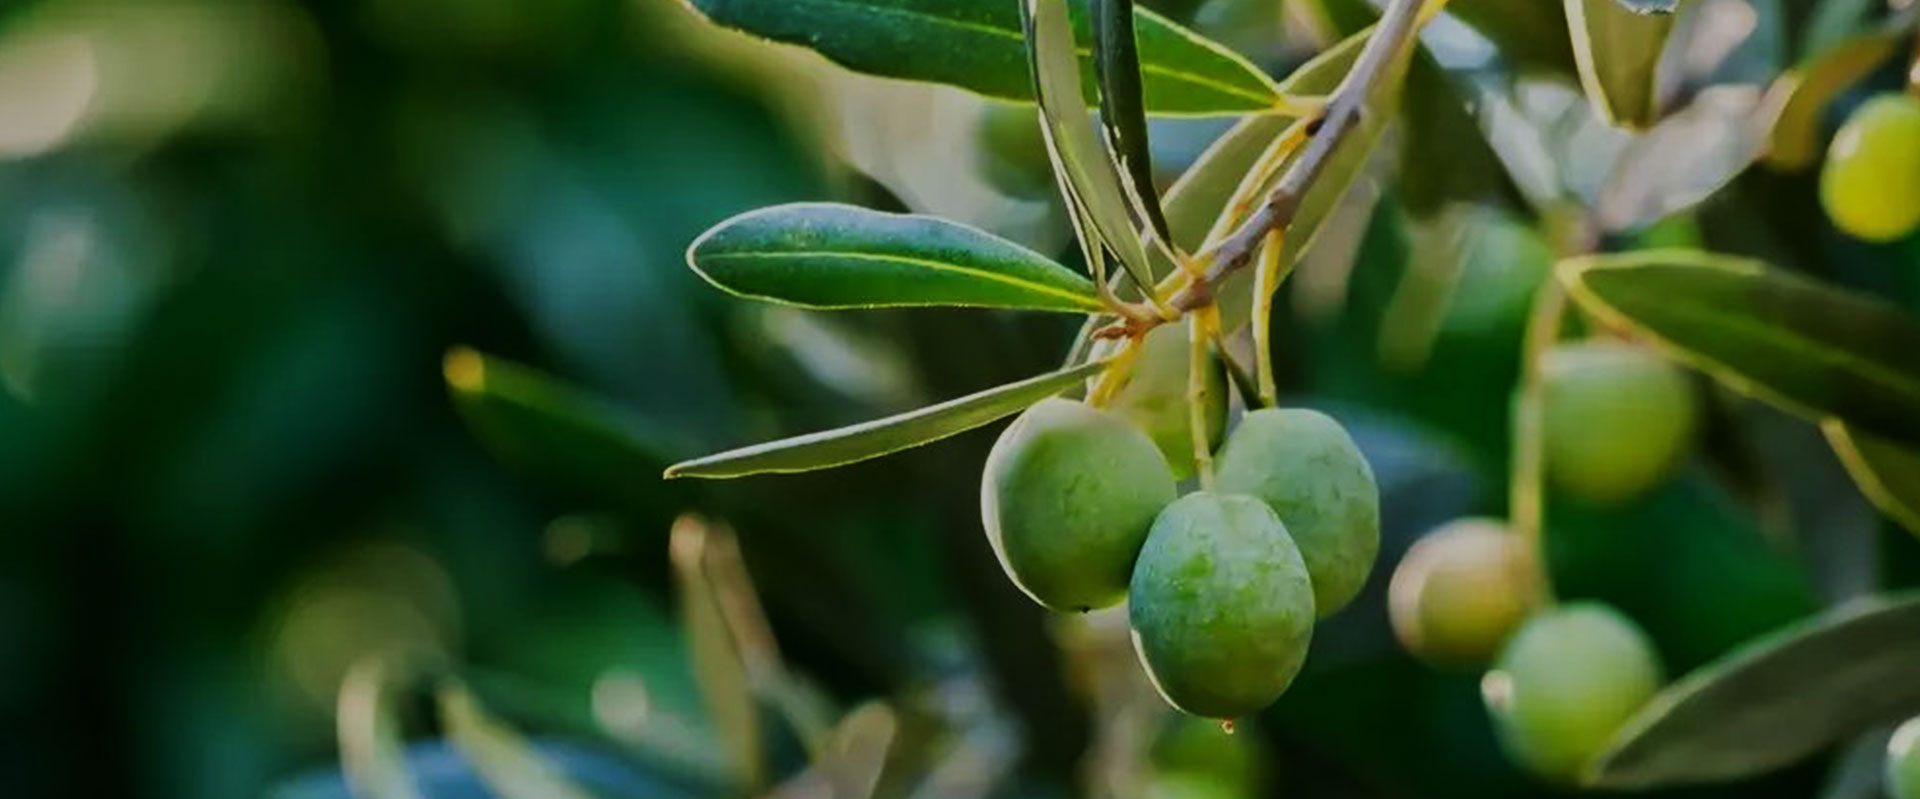 Extrait de feuille d'olive-Avantages pour une meilleure santé et peau